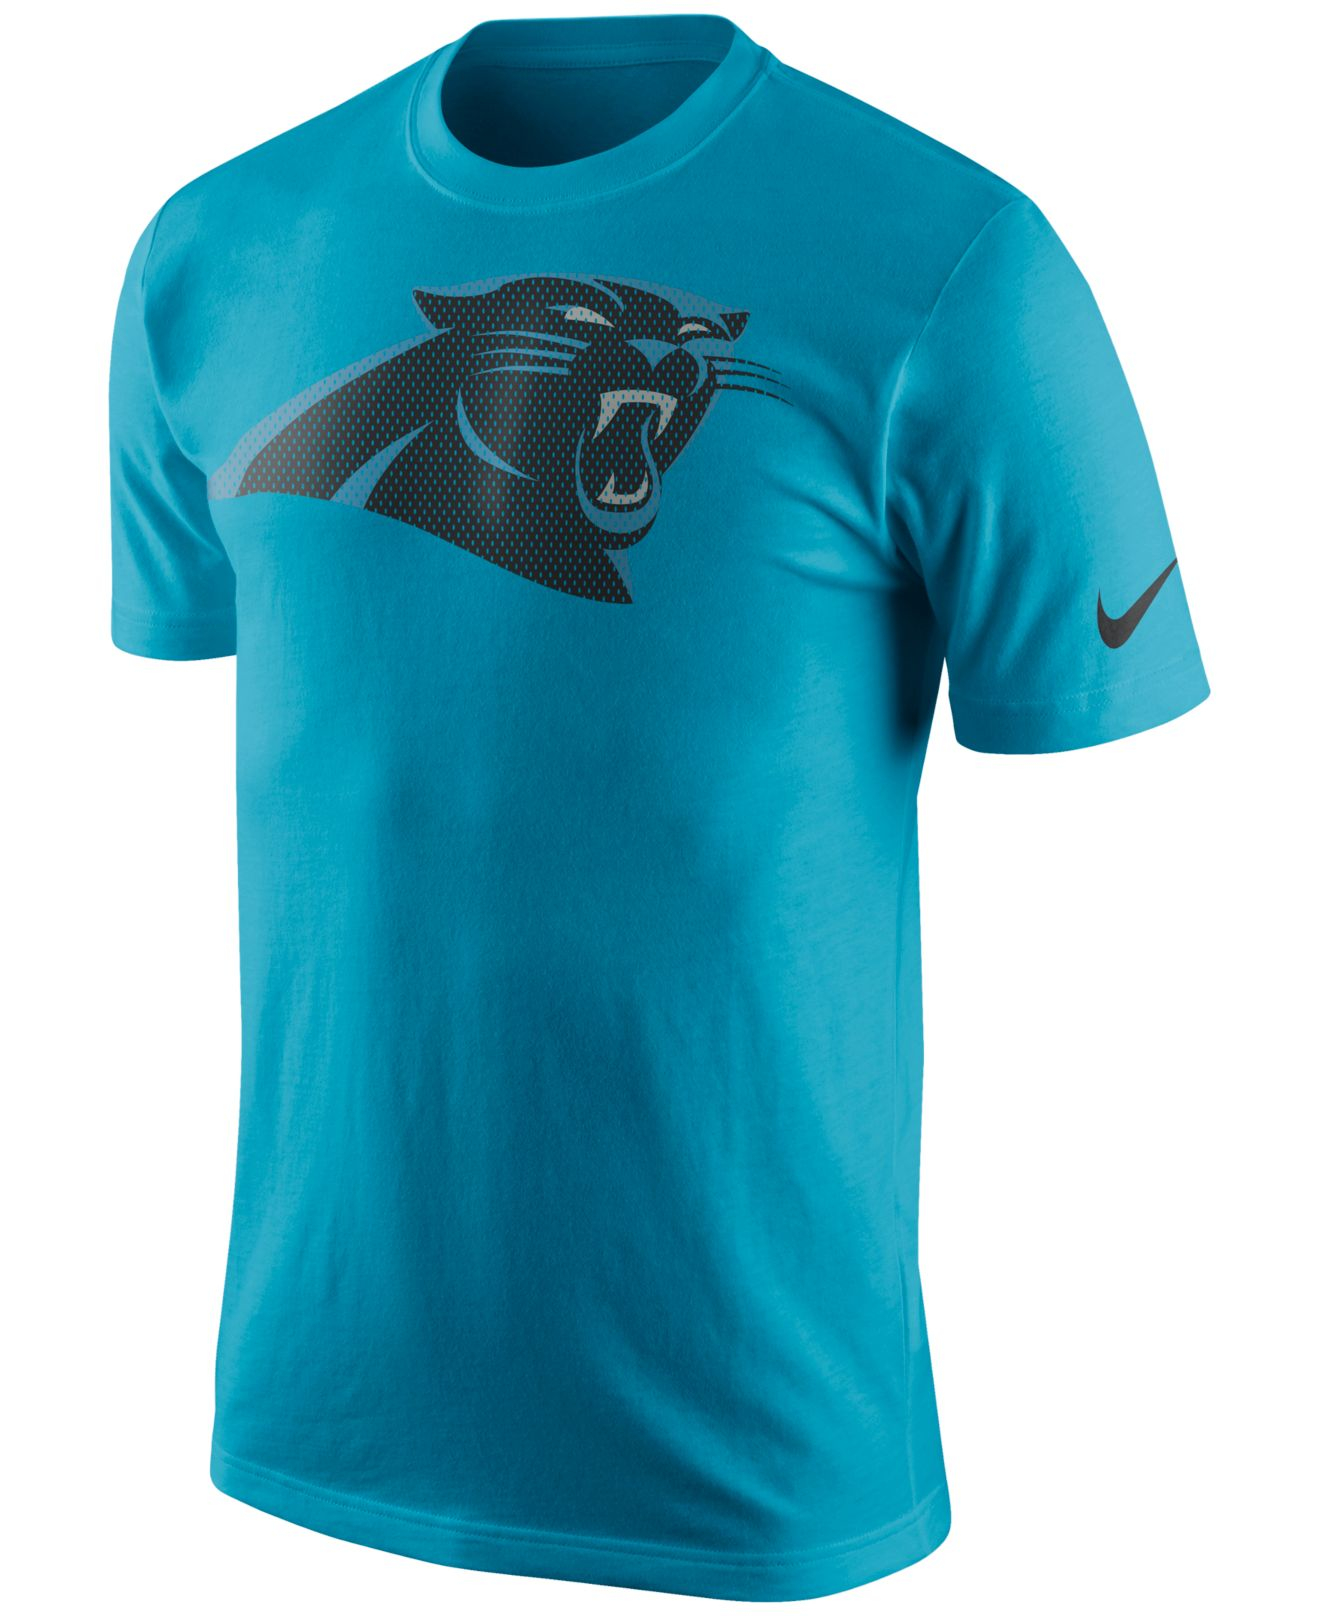 Lyst - Nike Men's Carolina Panthers Mesh Logo T-shirt in Blue for Men